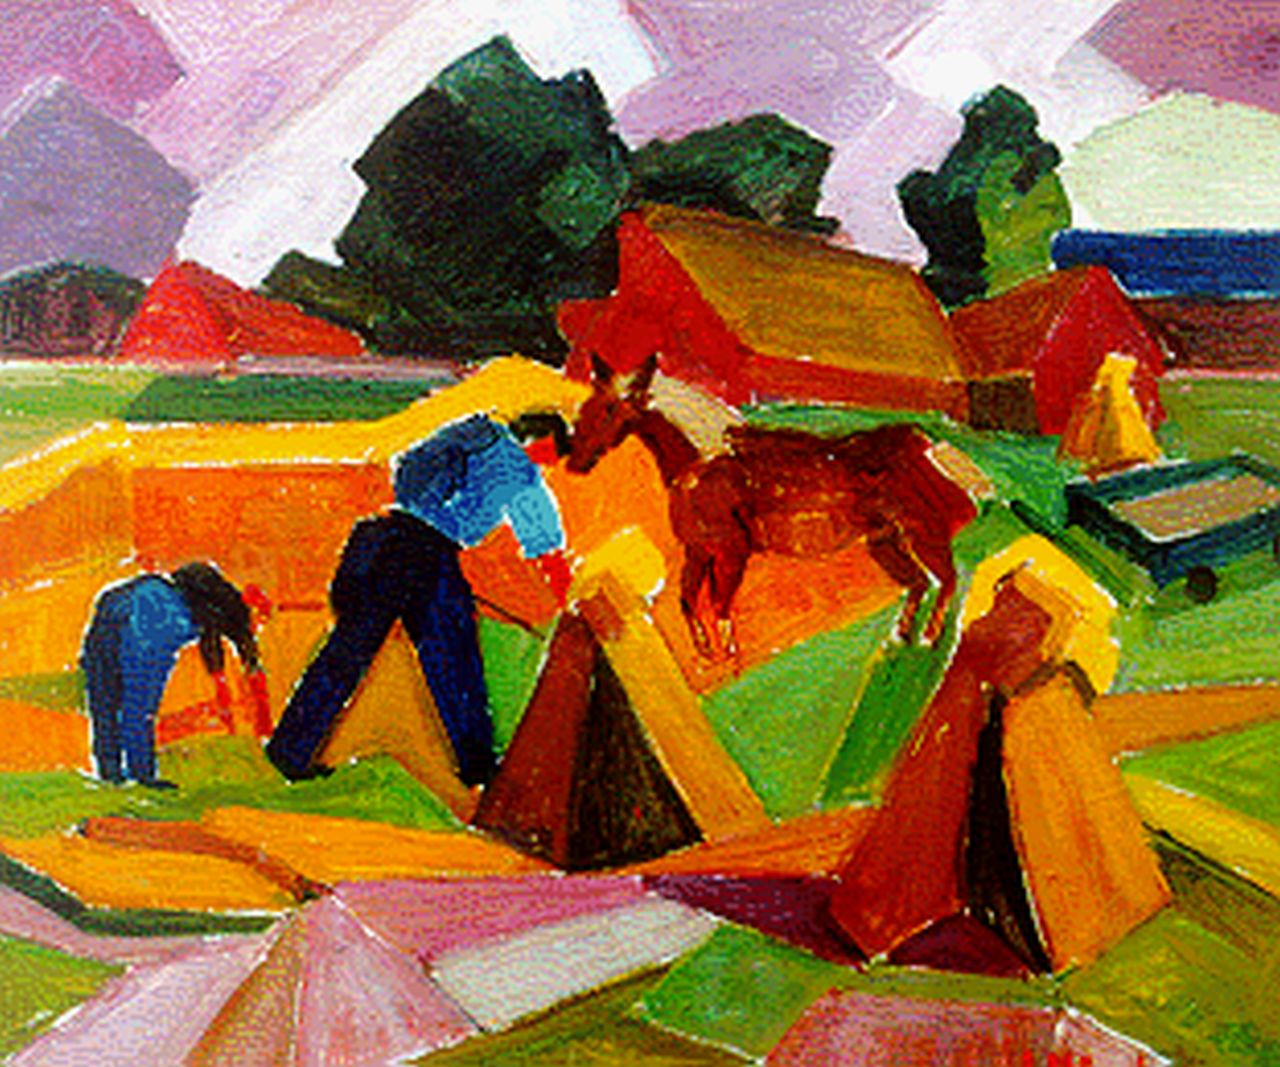 Braakensiek-Dekker A.M.  | Anna Maria Braakensiek-Dekker, Boerenarbeiders in het veld, olieverf op doek 50,5 x 60,8 cm, gesigneerd rechtsonder